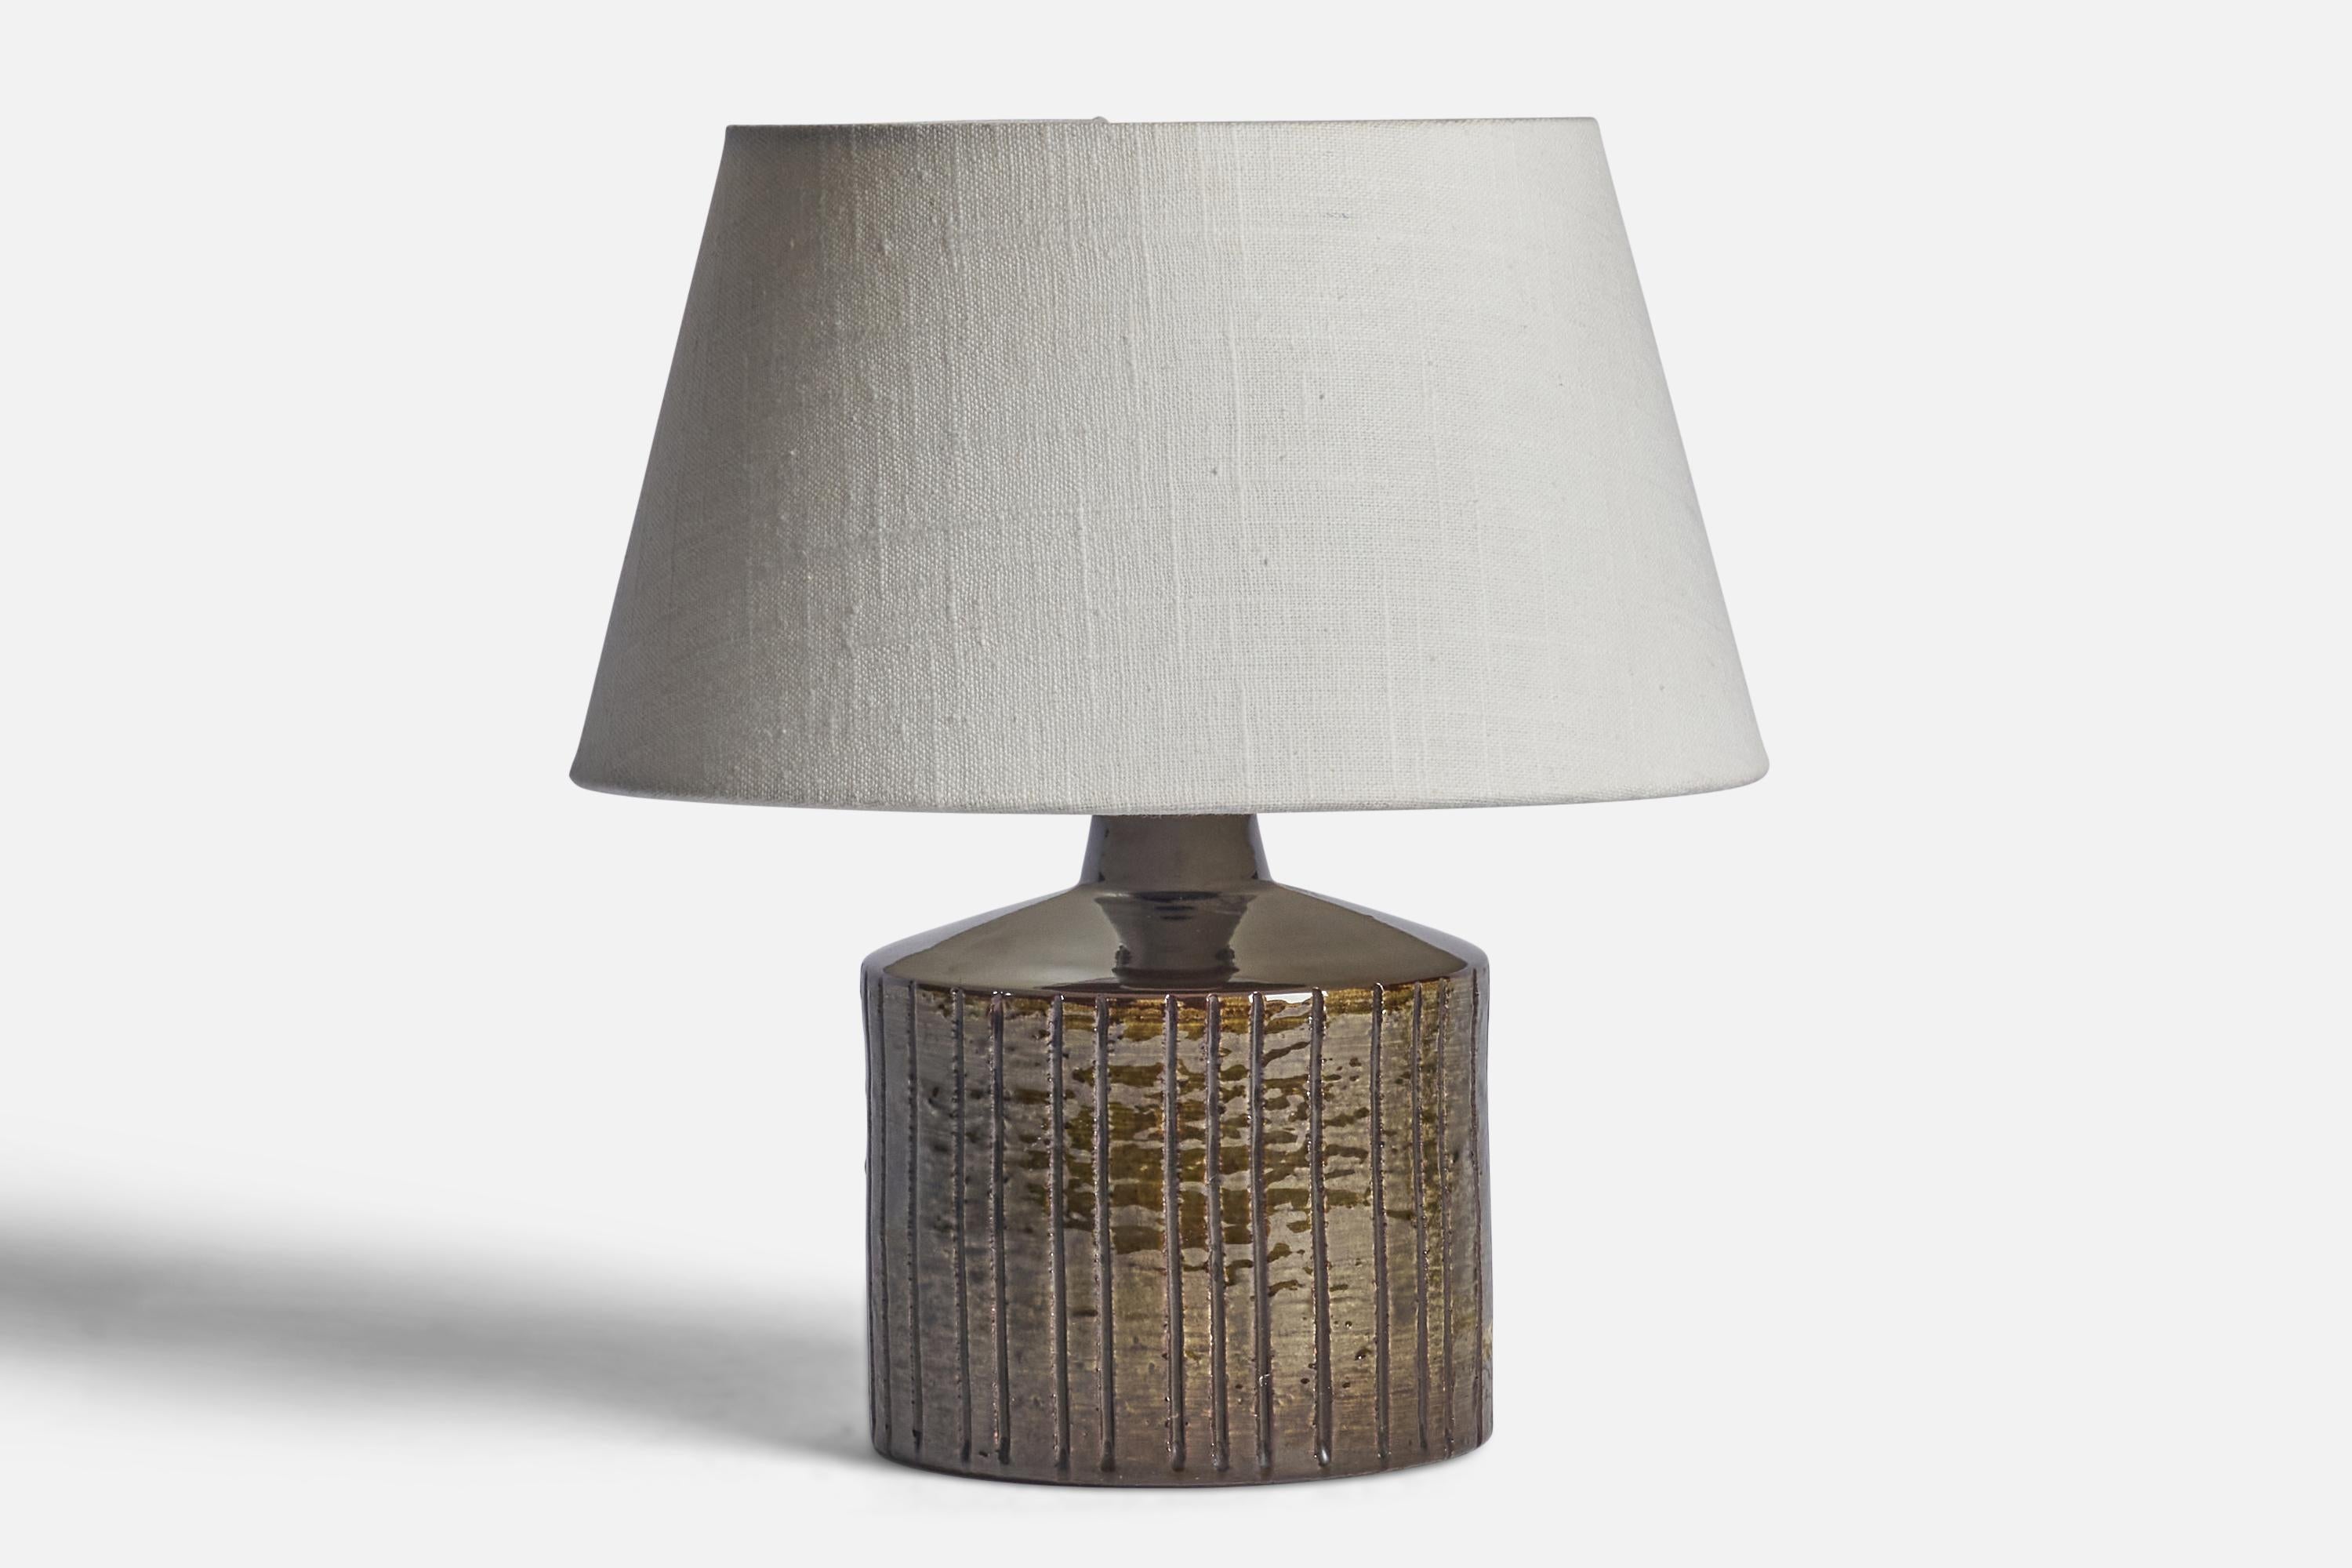 Lampe de table en grès émaillé brun, conçue et produite en Suède, années 1950.

Dimensions de la lampe (pouces) : 8.15